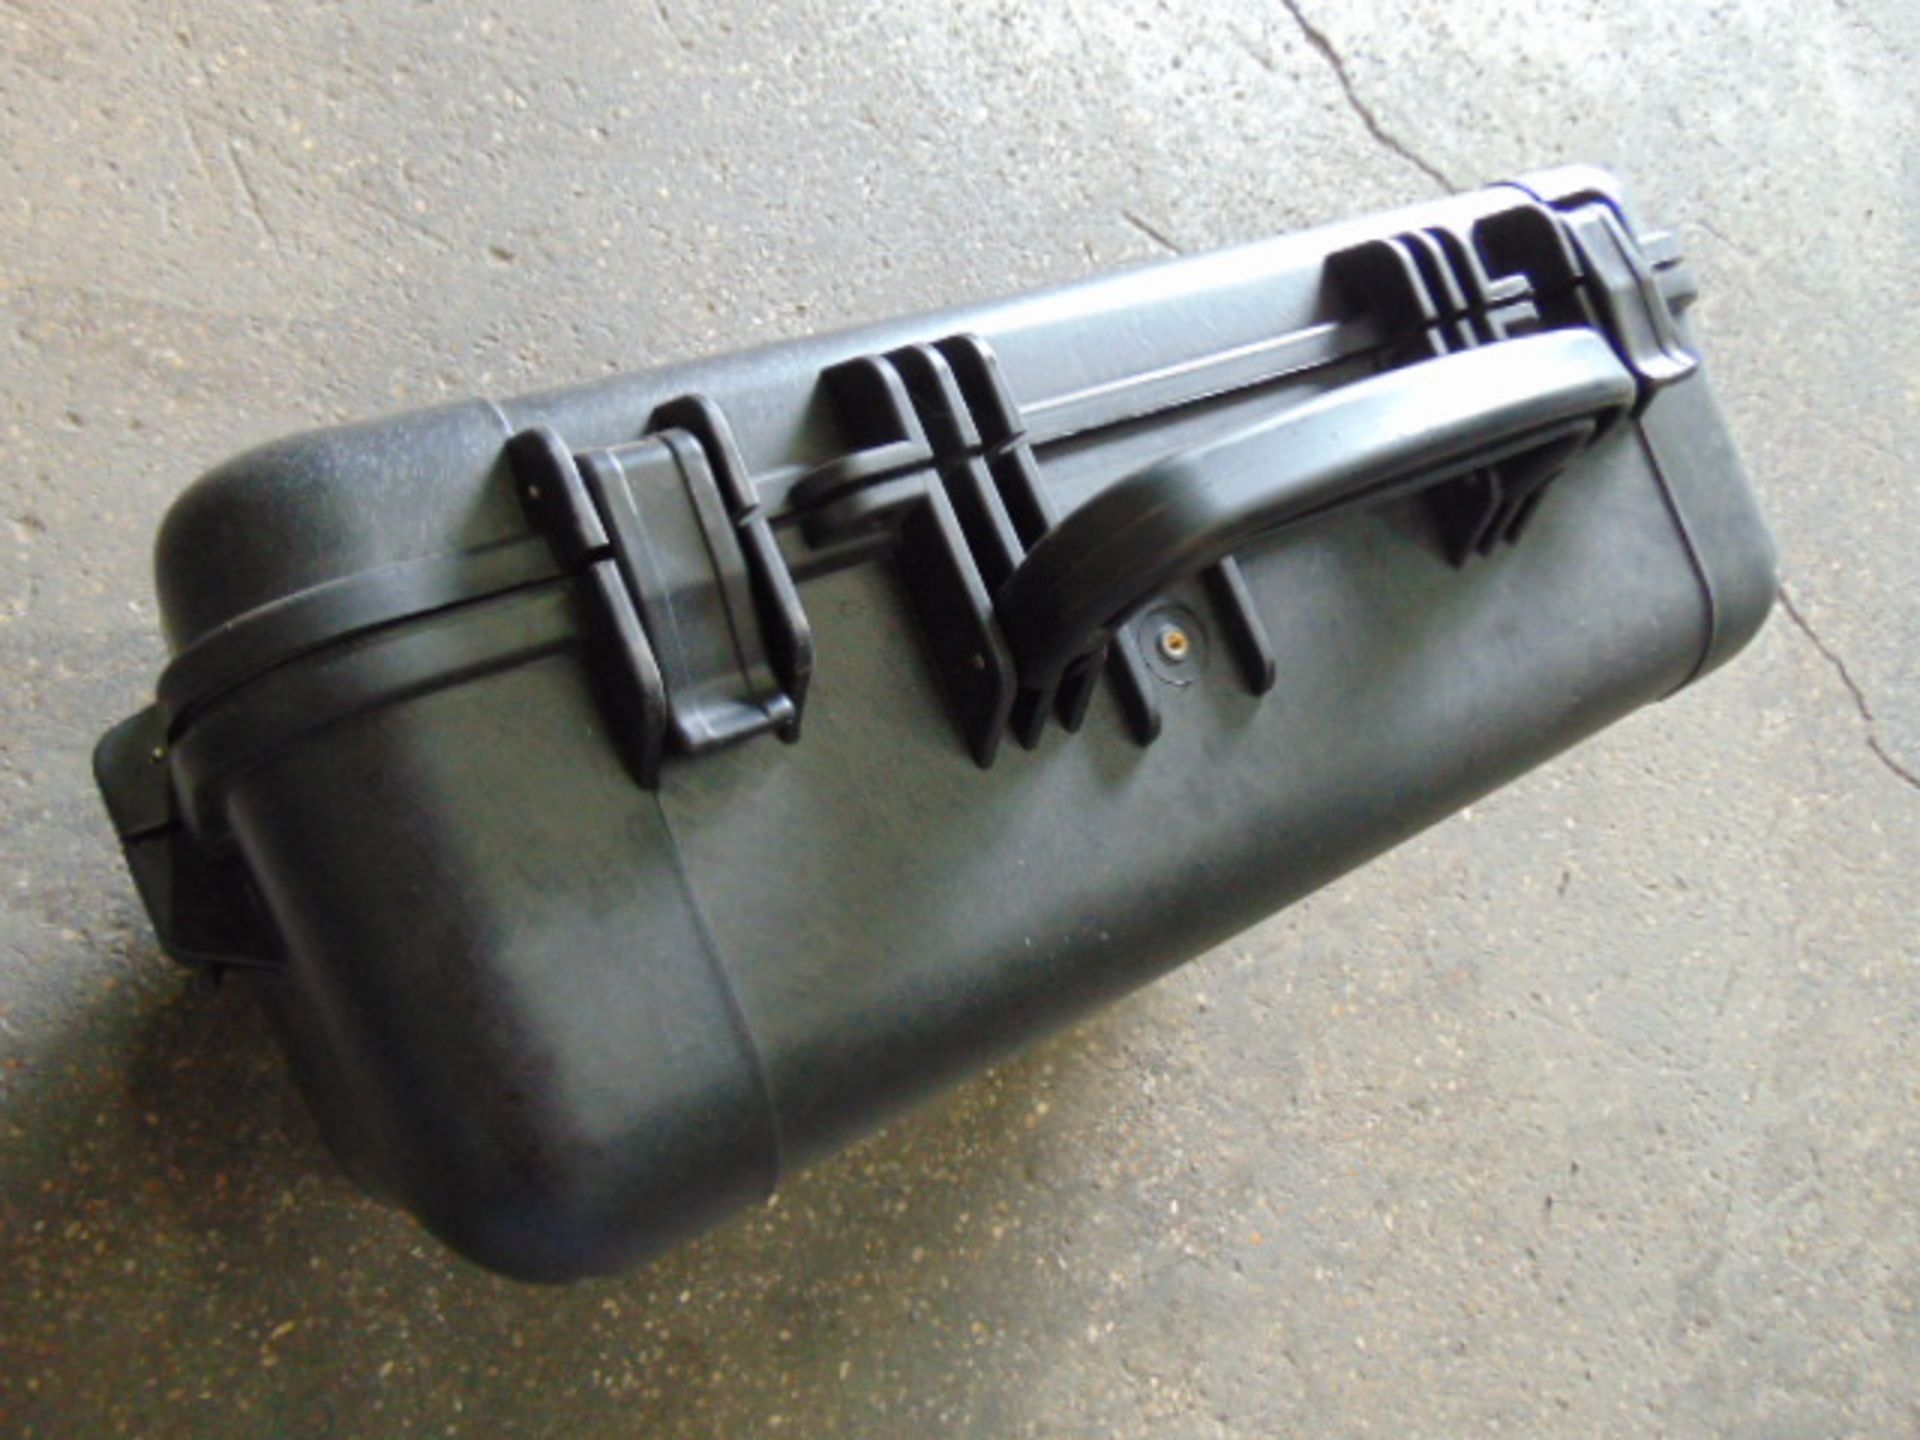 2 x Heavy-duty Waterproof Peli Style Hard Cases with Removeable Foam Inserts - Bild 2 aus 5